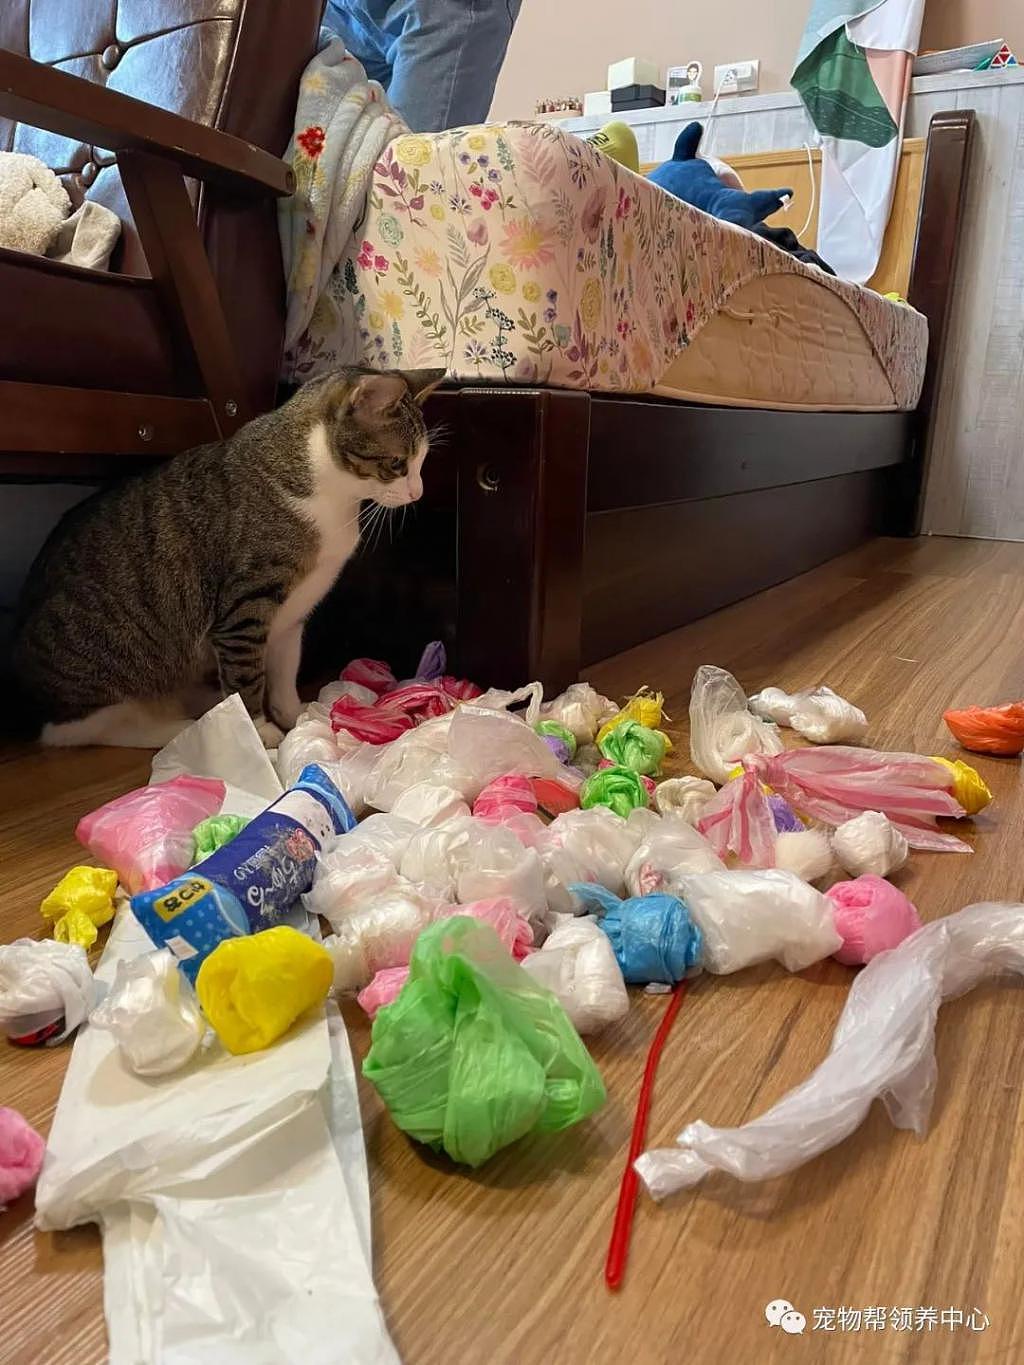 大扫除找出 60 多个塑料袋，当事猫坐一旁失落：宝藏被发现了 . - 5